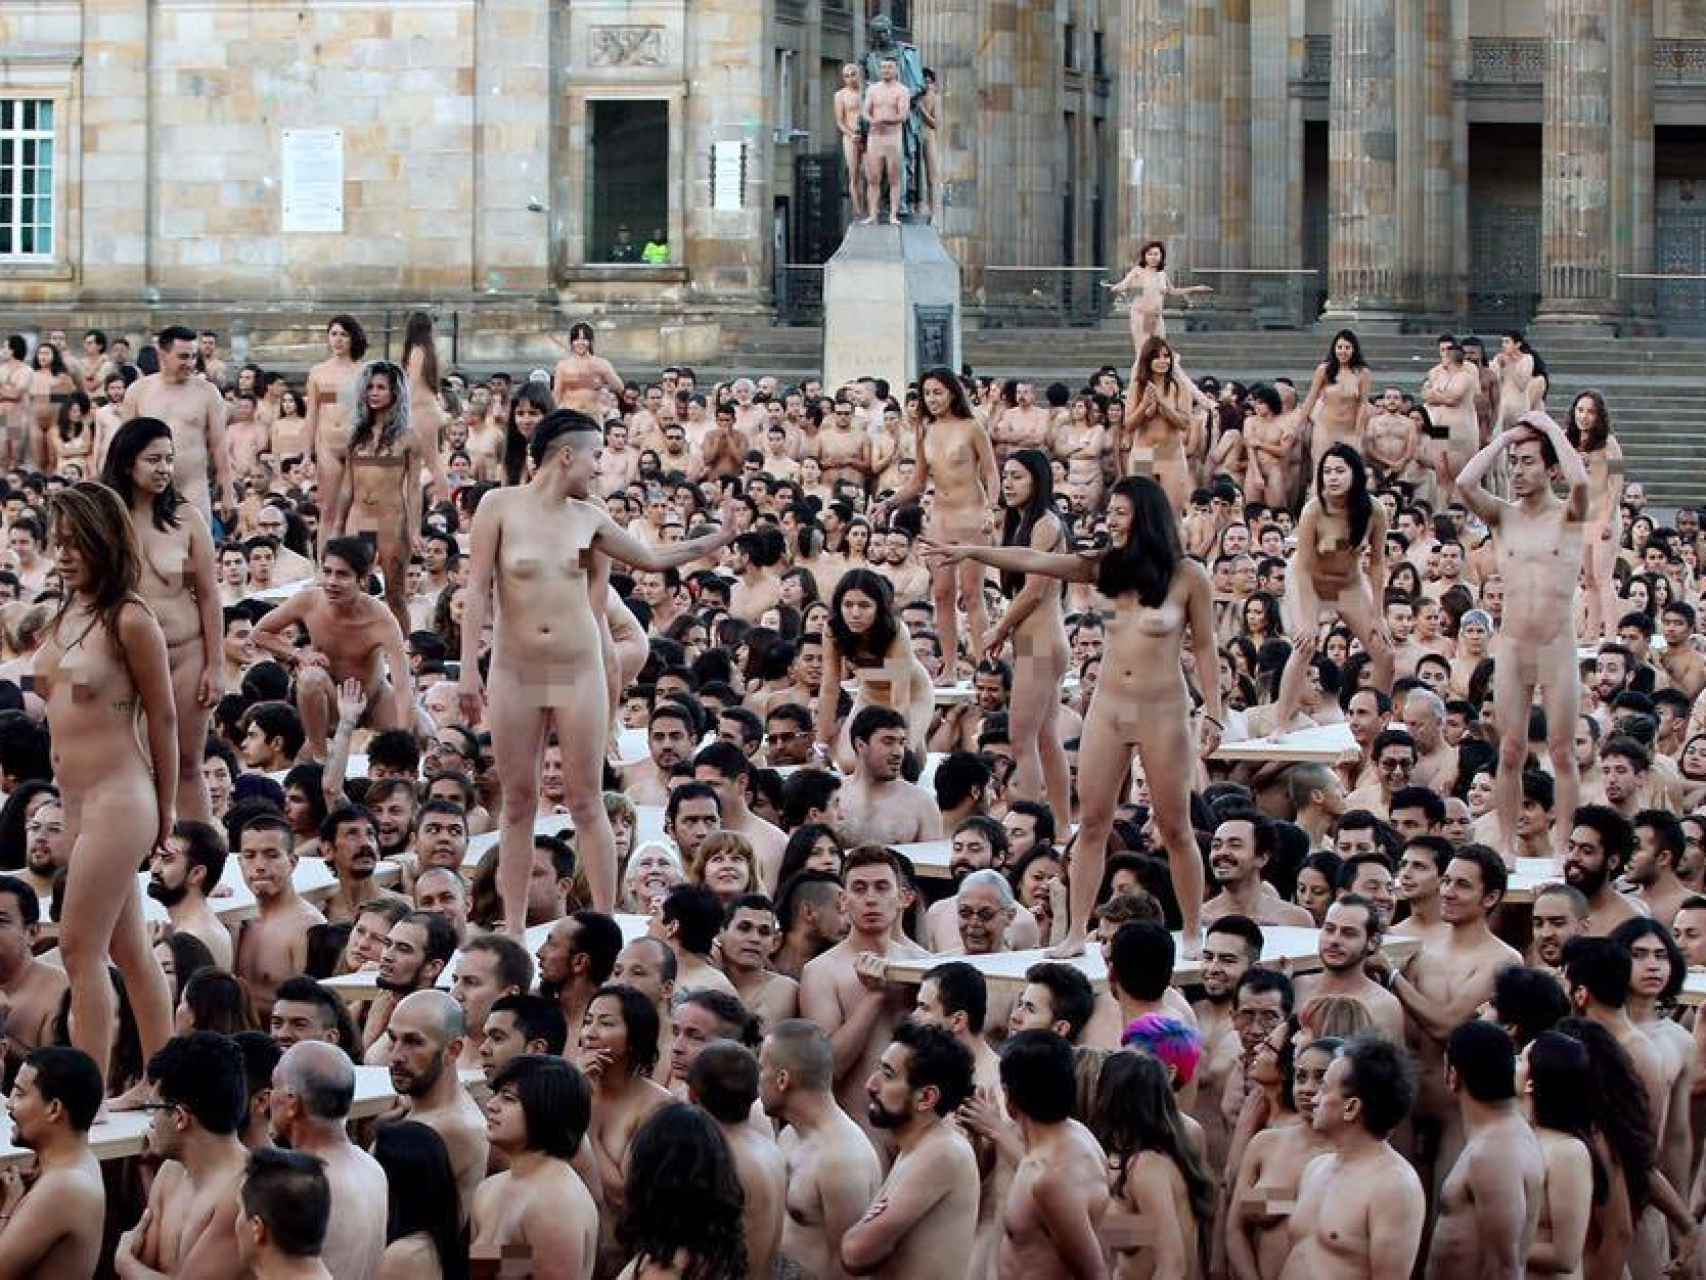 Desnuda y rodeada de otras 6.000 personas en cueros se pasa mucho frío”